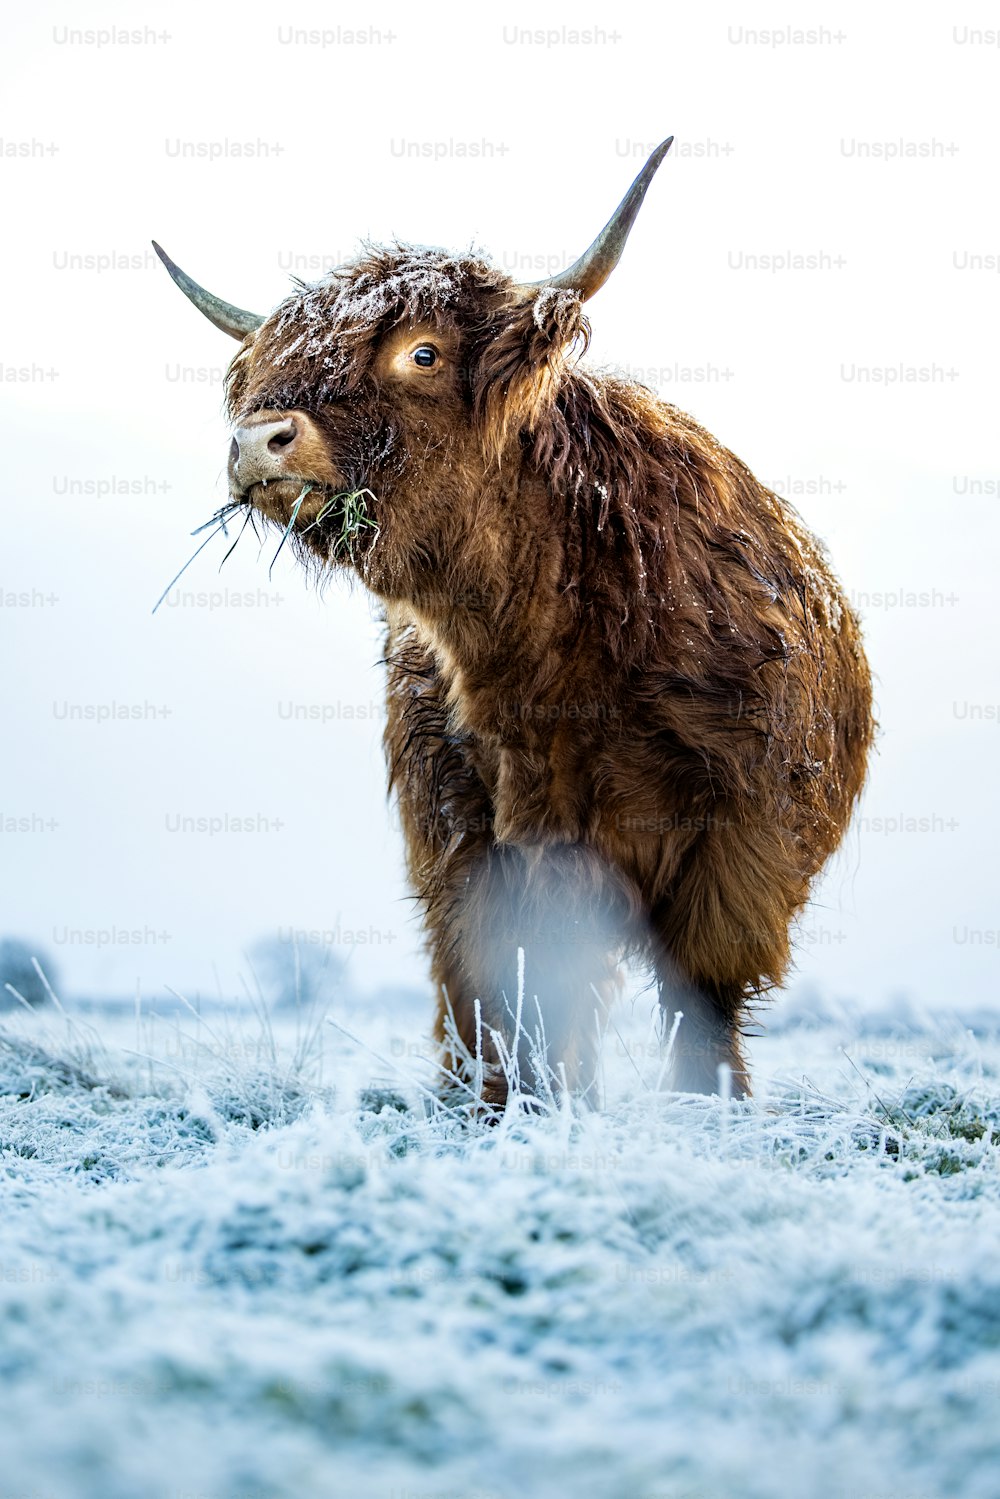 a yak is standing in a snowy field